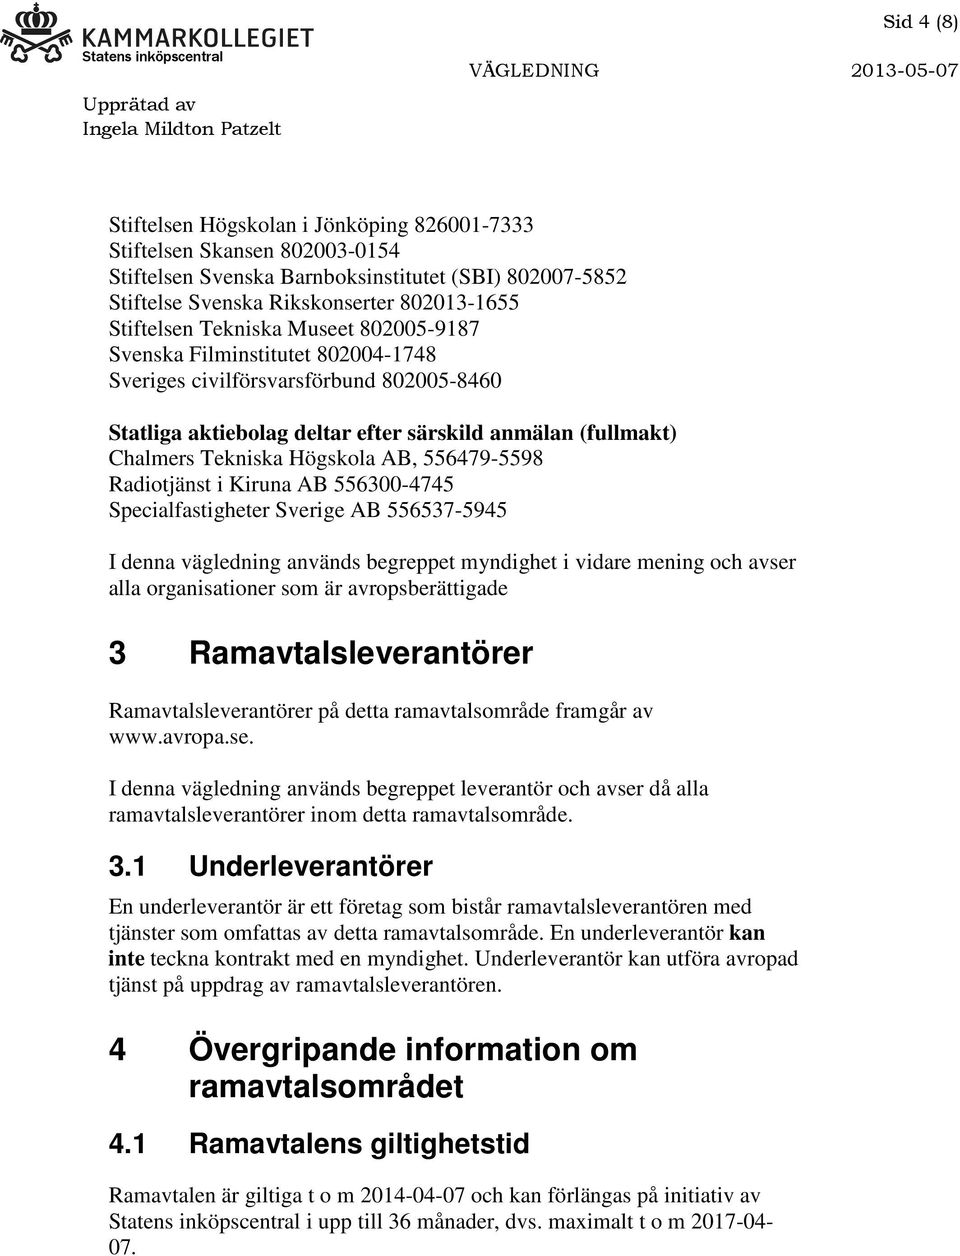 556479-5598 Radiotjänst i Kiruna AB 556300-4745 Specialfastigheter Sverige AB 556537-5945 I denna vägledning används begreppet myndighet i vidare mening och avser alla organisationer som är